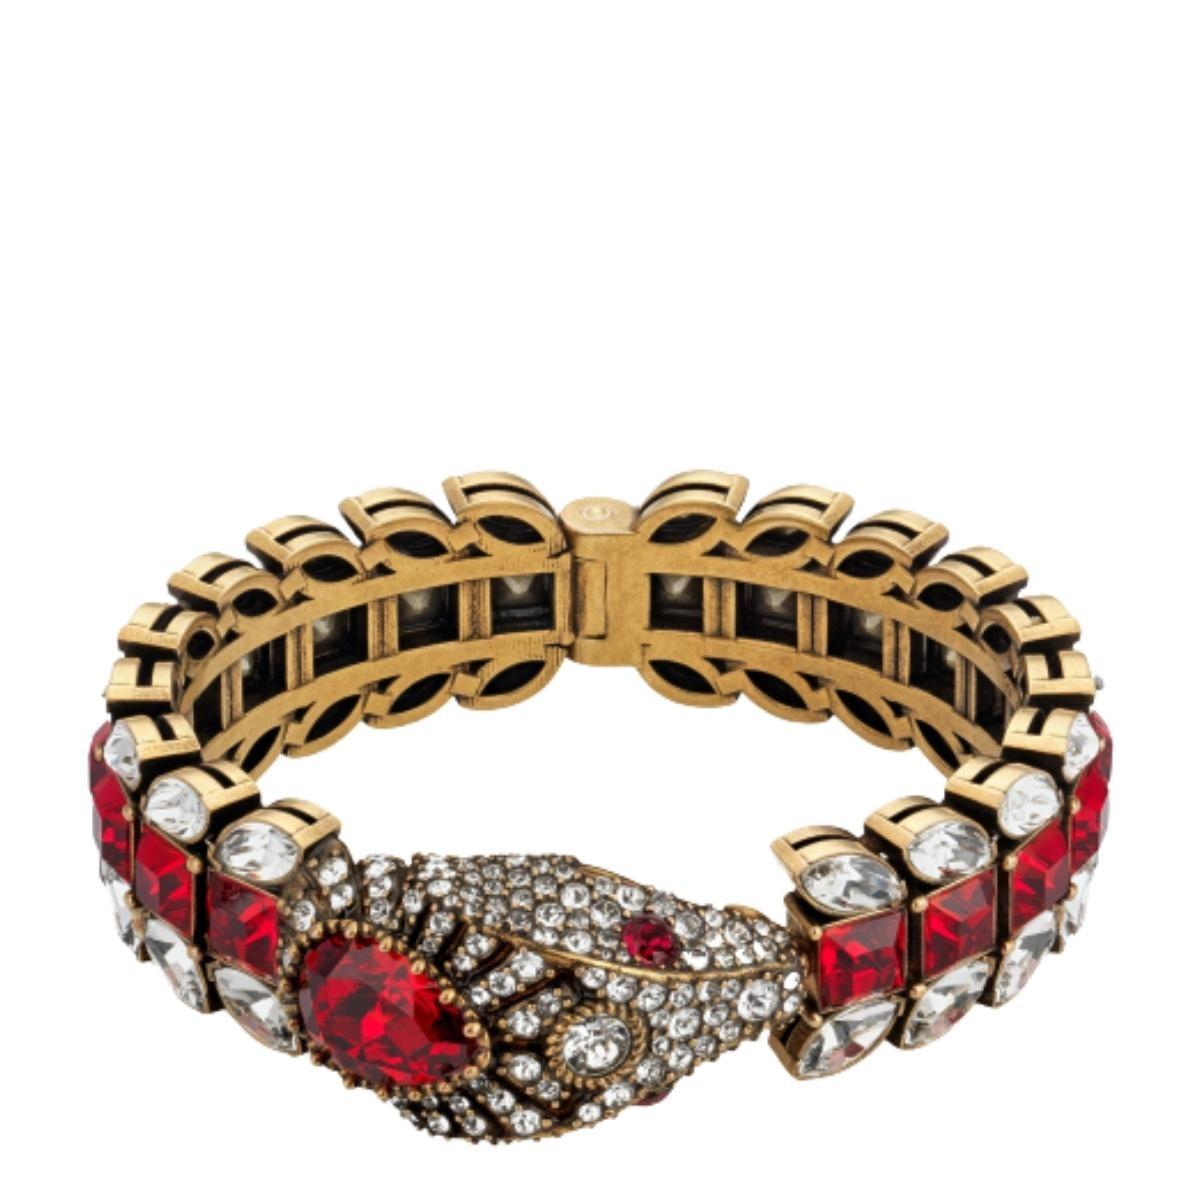 Bracelet en or avec un motif serpent de Gucci. 
Incrustée d'éléments décoratifs de couleur argentée et rouge.
Conception structurée
Métal de couleur or et embellissements en cristal.
Composition : Cristal, métal
Largeur : 0.8